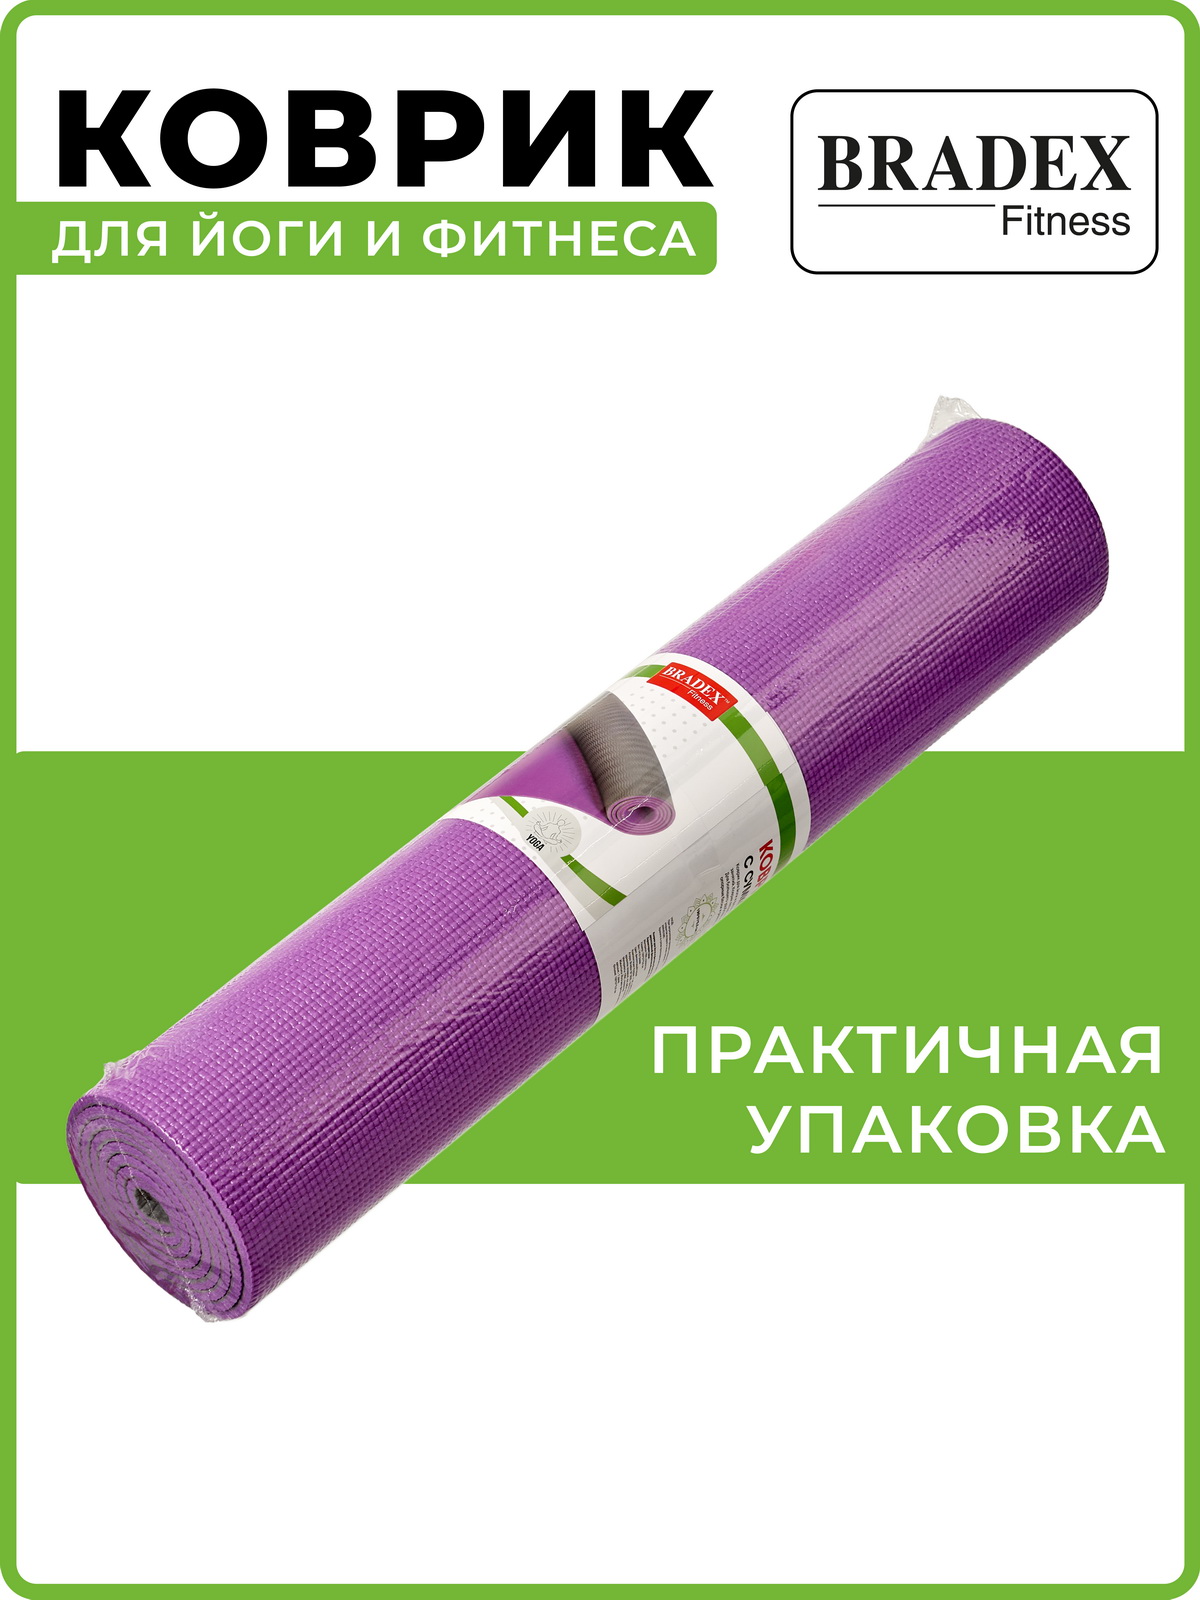 Коврик для йоги и фитнеса Bradex двухслойный фиолетовый 183х61 см - фото 13